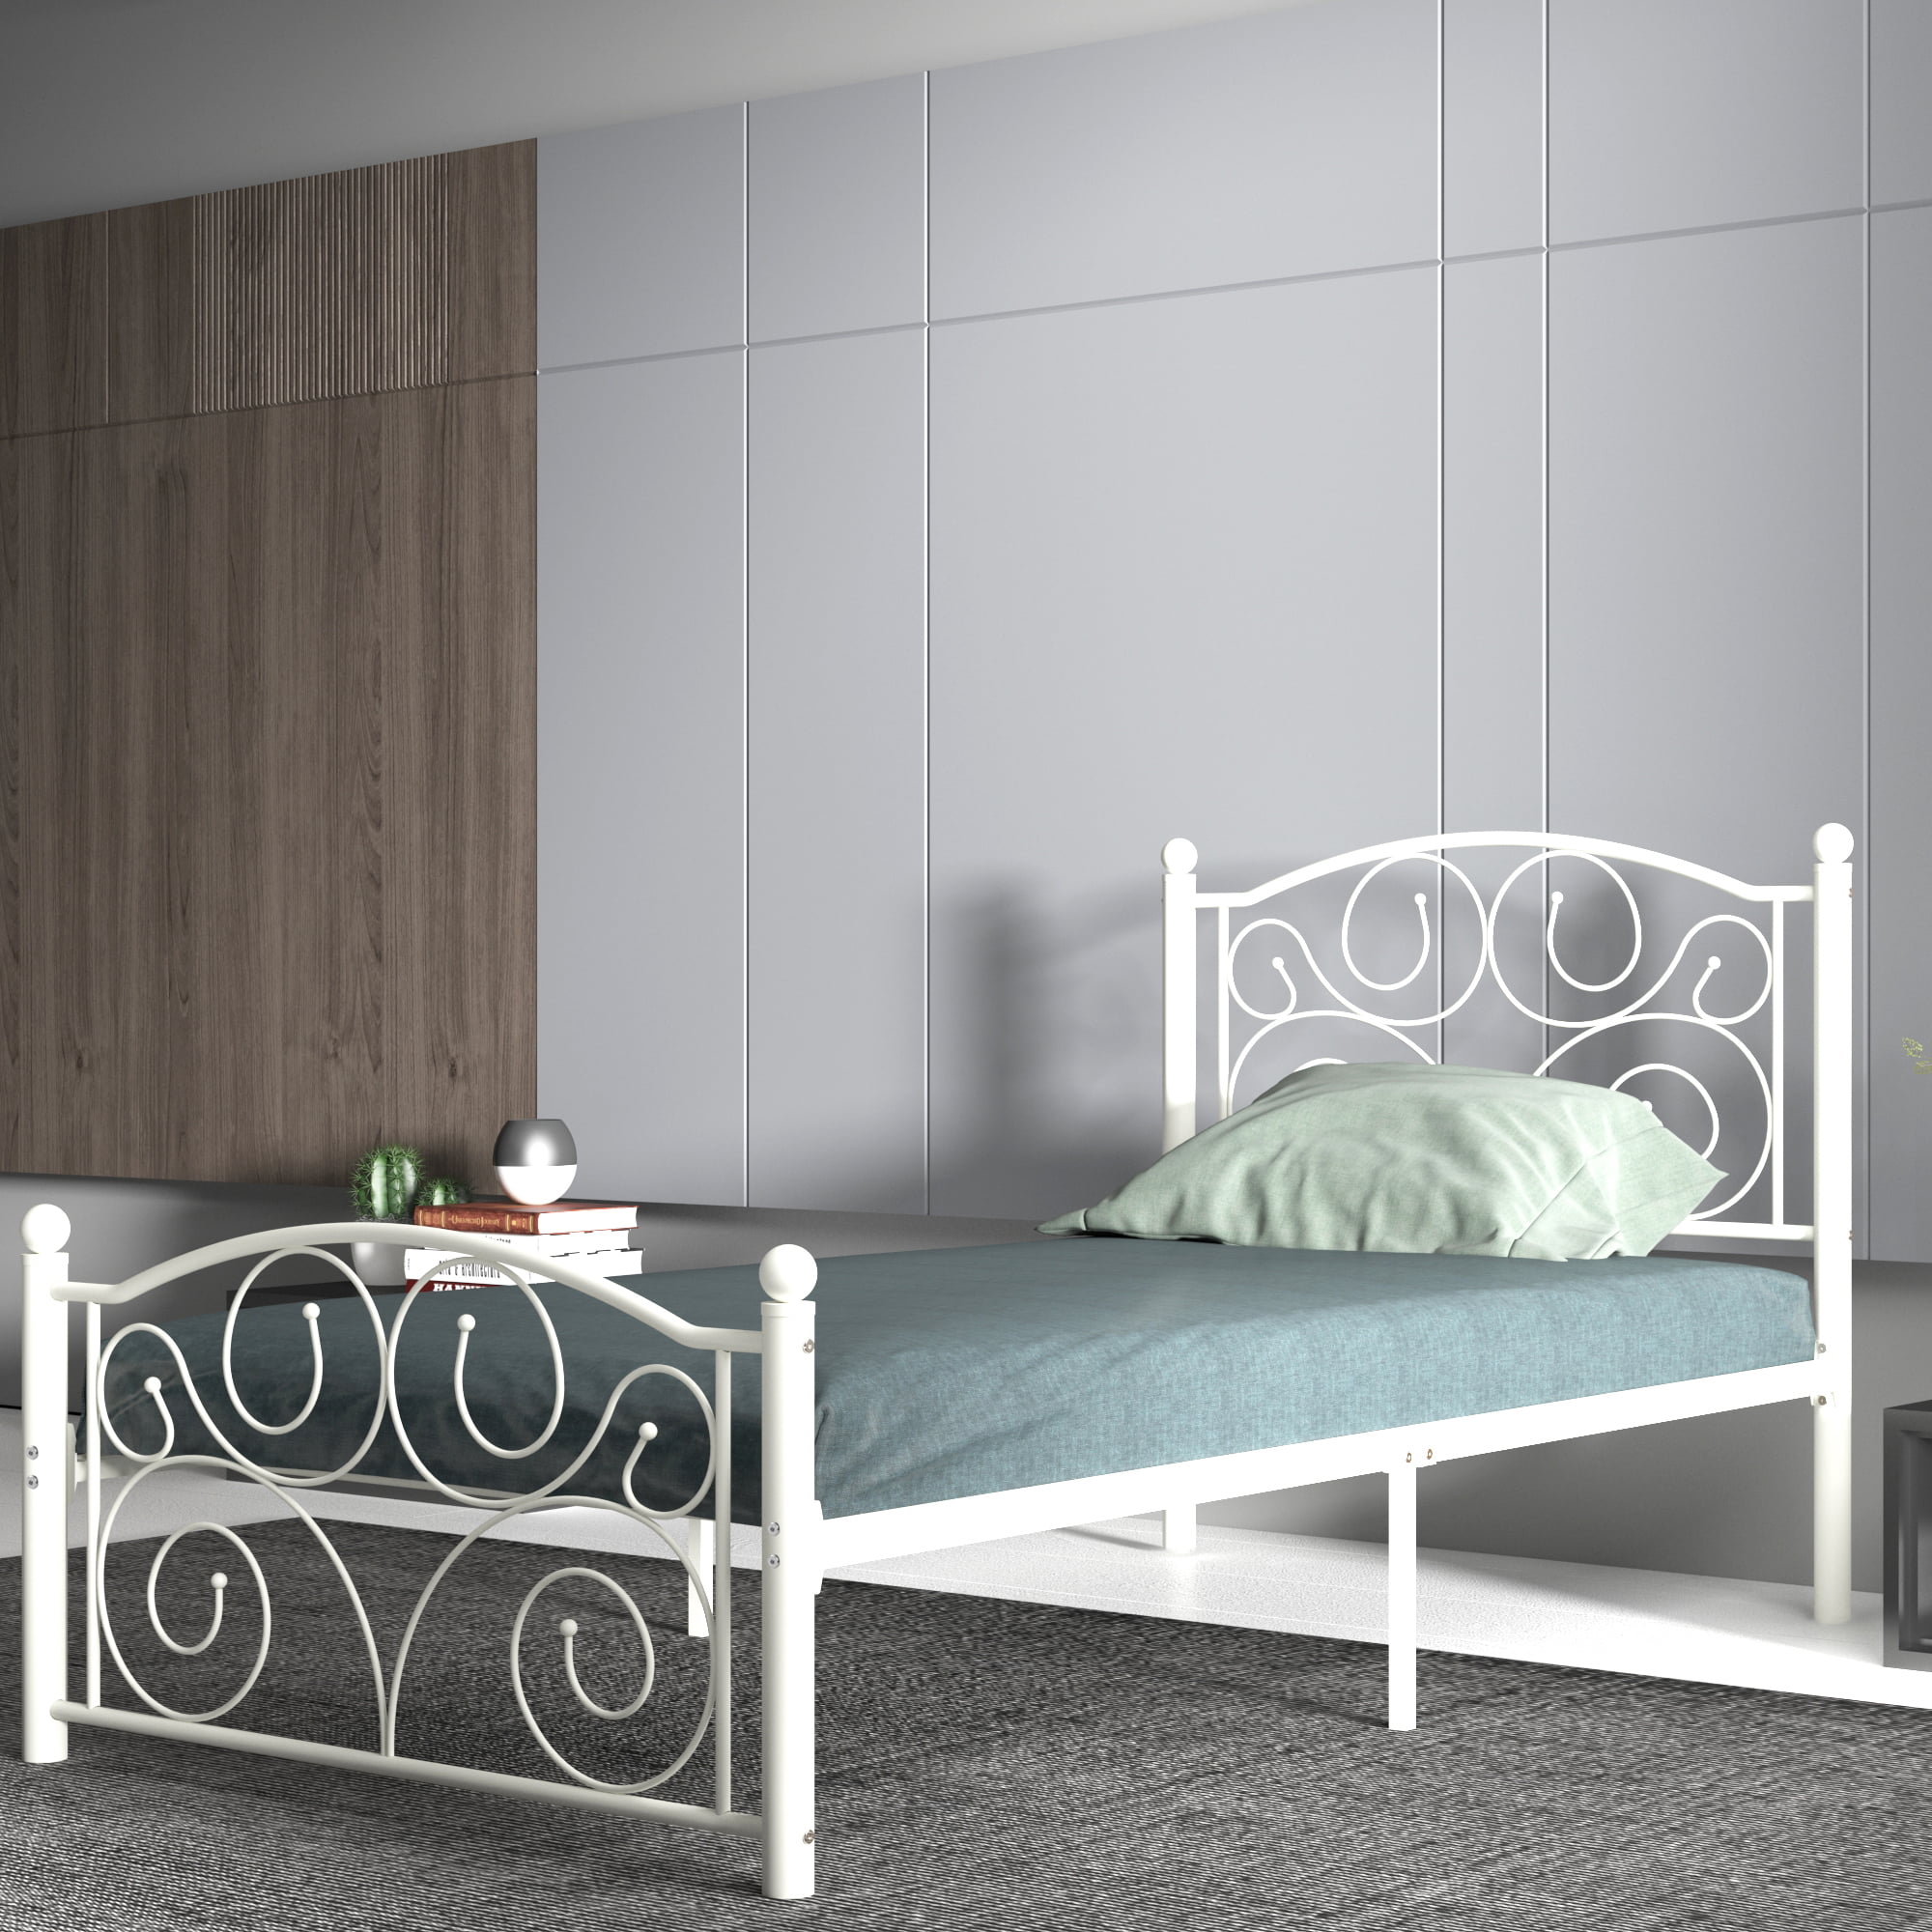 En Casa ® Metal Bed 120x200cm White Bed Frame Design Bed Bedroom Metal 